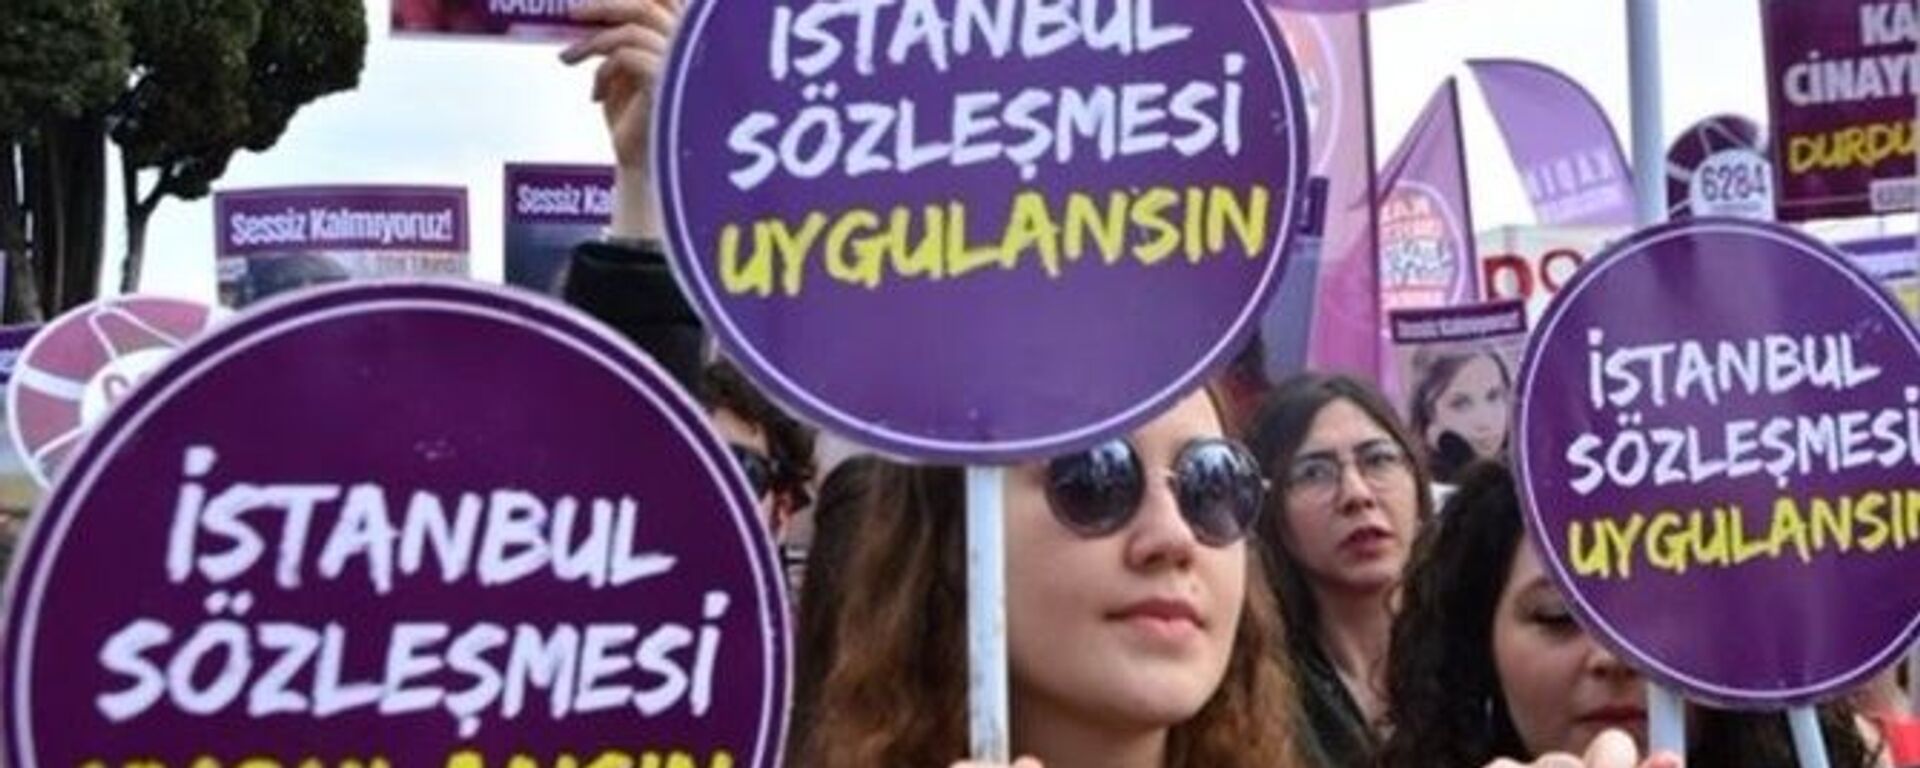 Kadına yönelik şiddet protestosu - İstanbul Sözleşmesi - Sputnik Türkiye, 1920, 11.05.2021